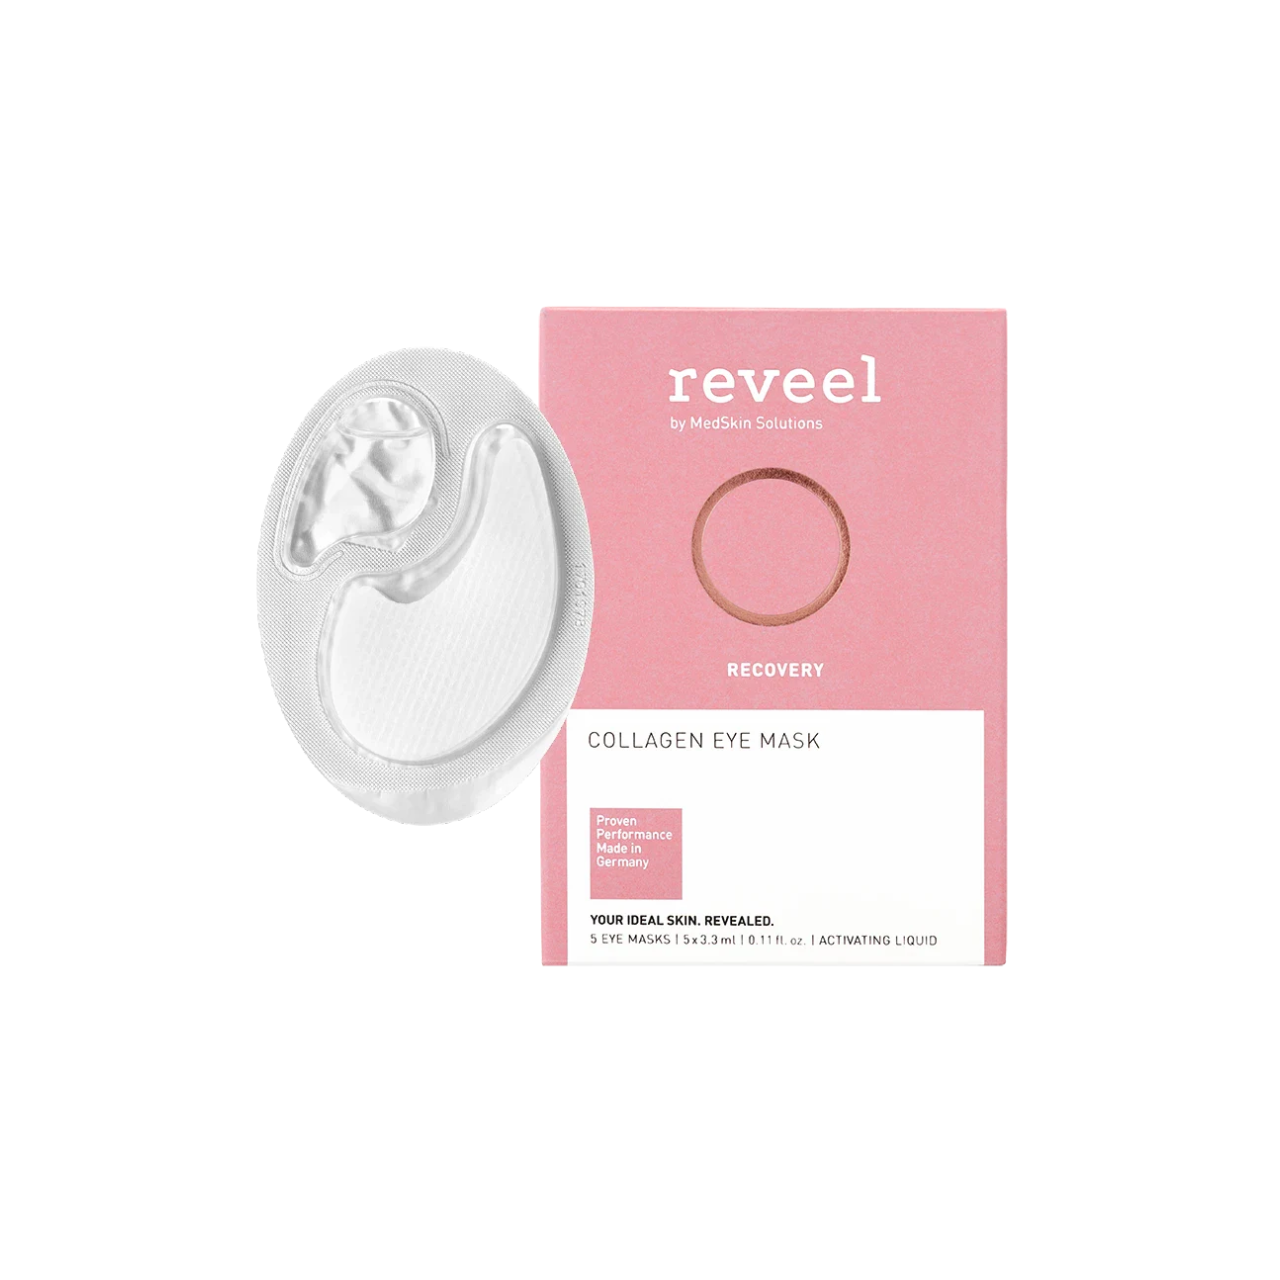 Reveel Collagen Eye Mask